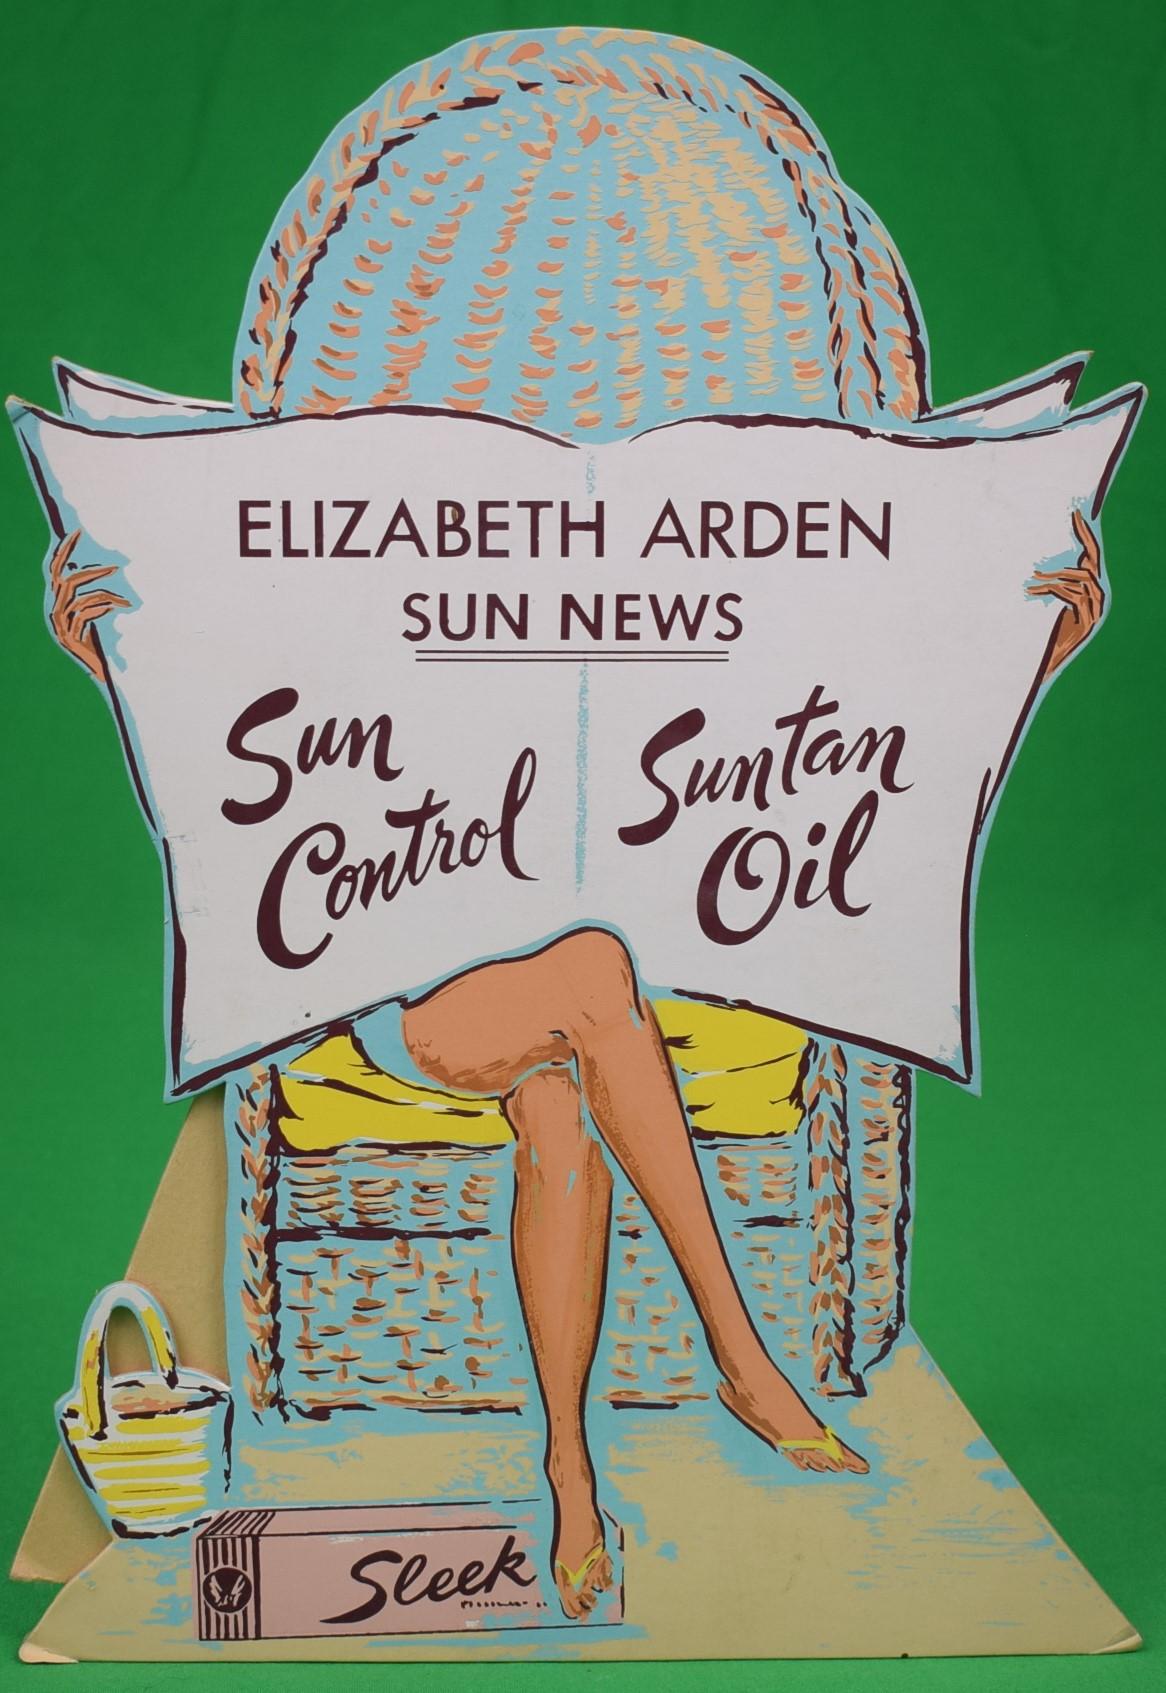 "Elizabeth Arden Sun News Sun Control/ Suntan Oil c1950s 3-D Advert Sign" - Art by Alexander Warren Montel